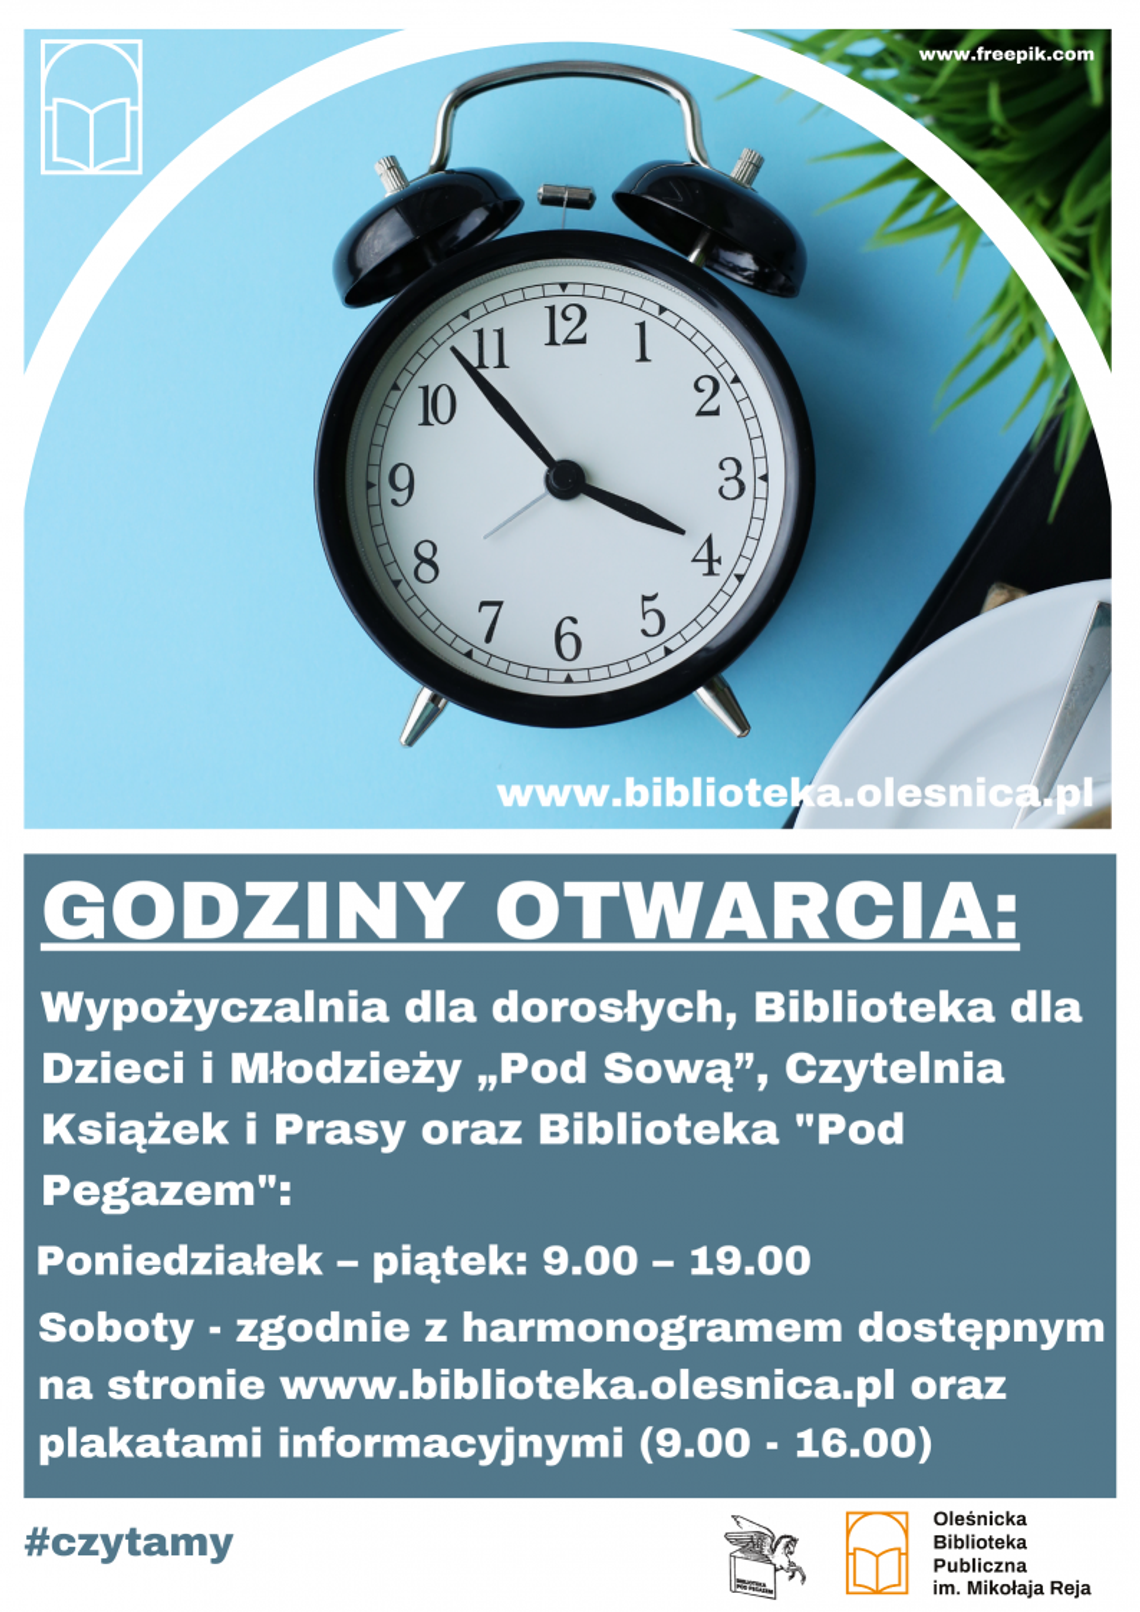 Zasady funkcjonowania biblioteki w Oleśnicy od 3 stycznia